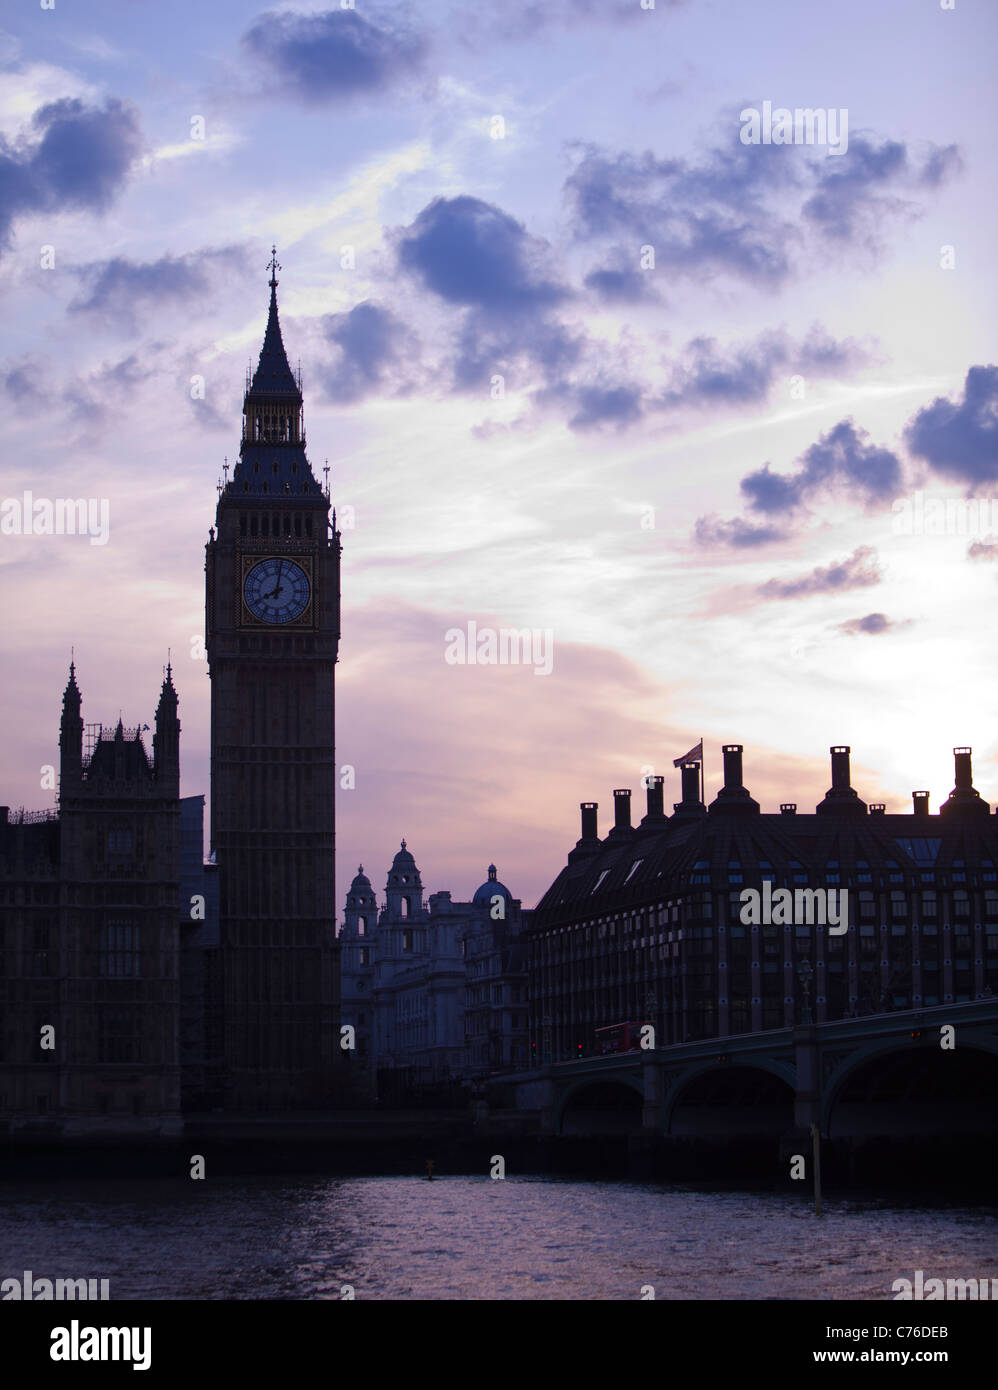 UK, London, Skyline with Big Ben at dusk Stock Photo